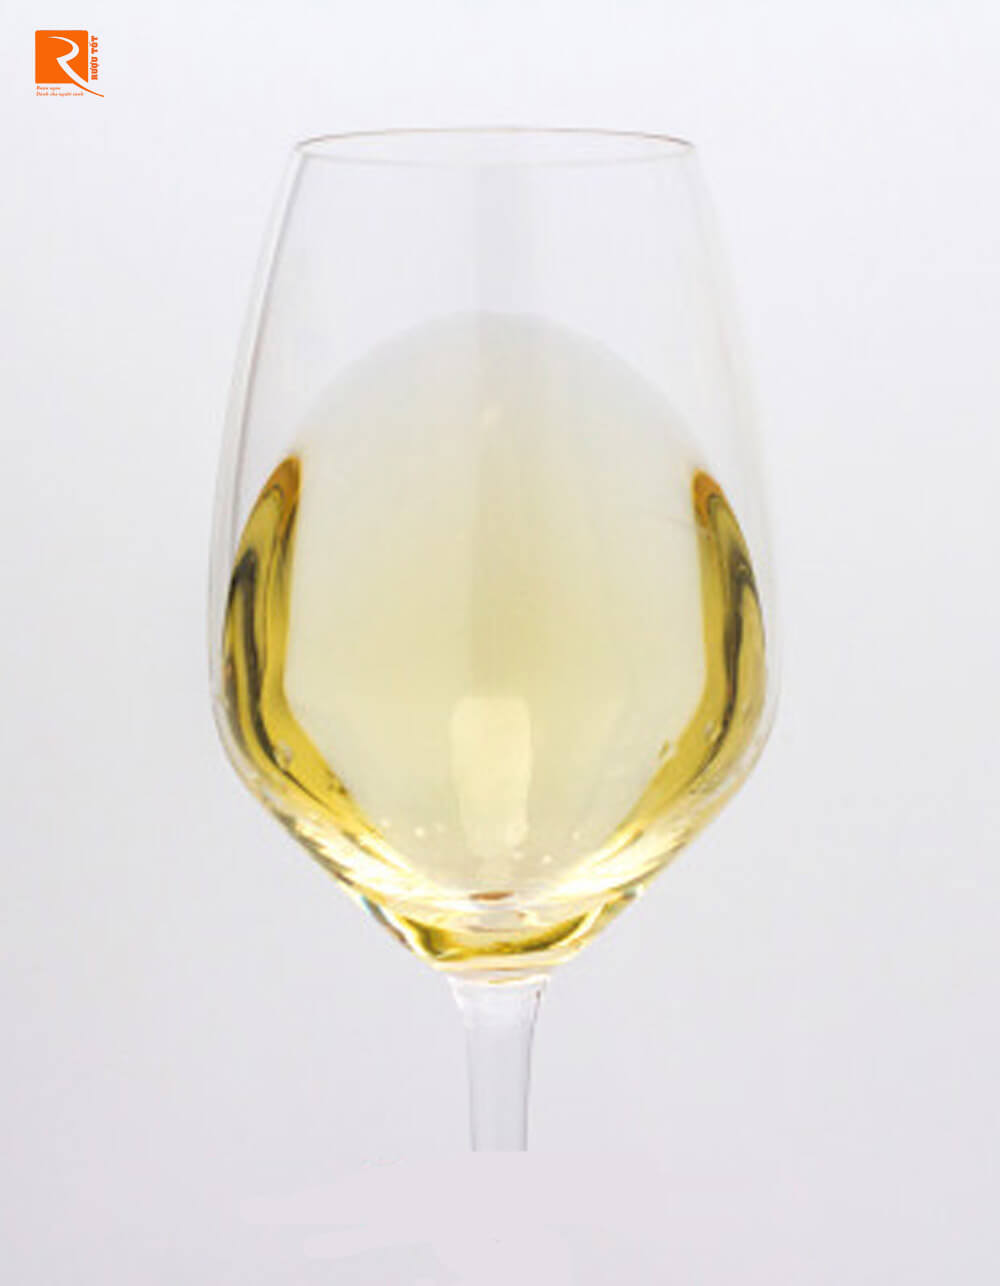 Do đất đá granit chủ yếu là đất sét, rượu vang Condrieu thường đầy đặn với độ axit thấp.